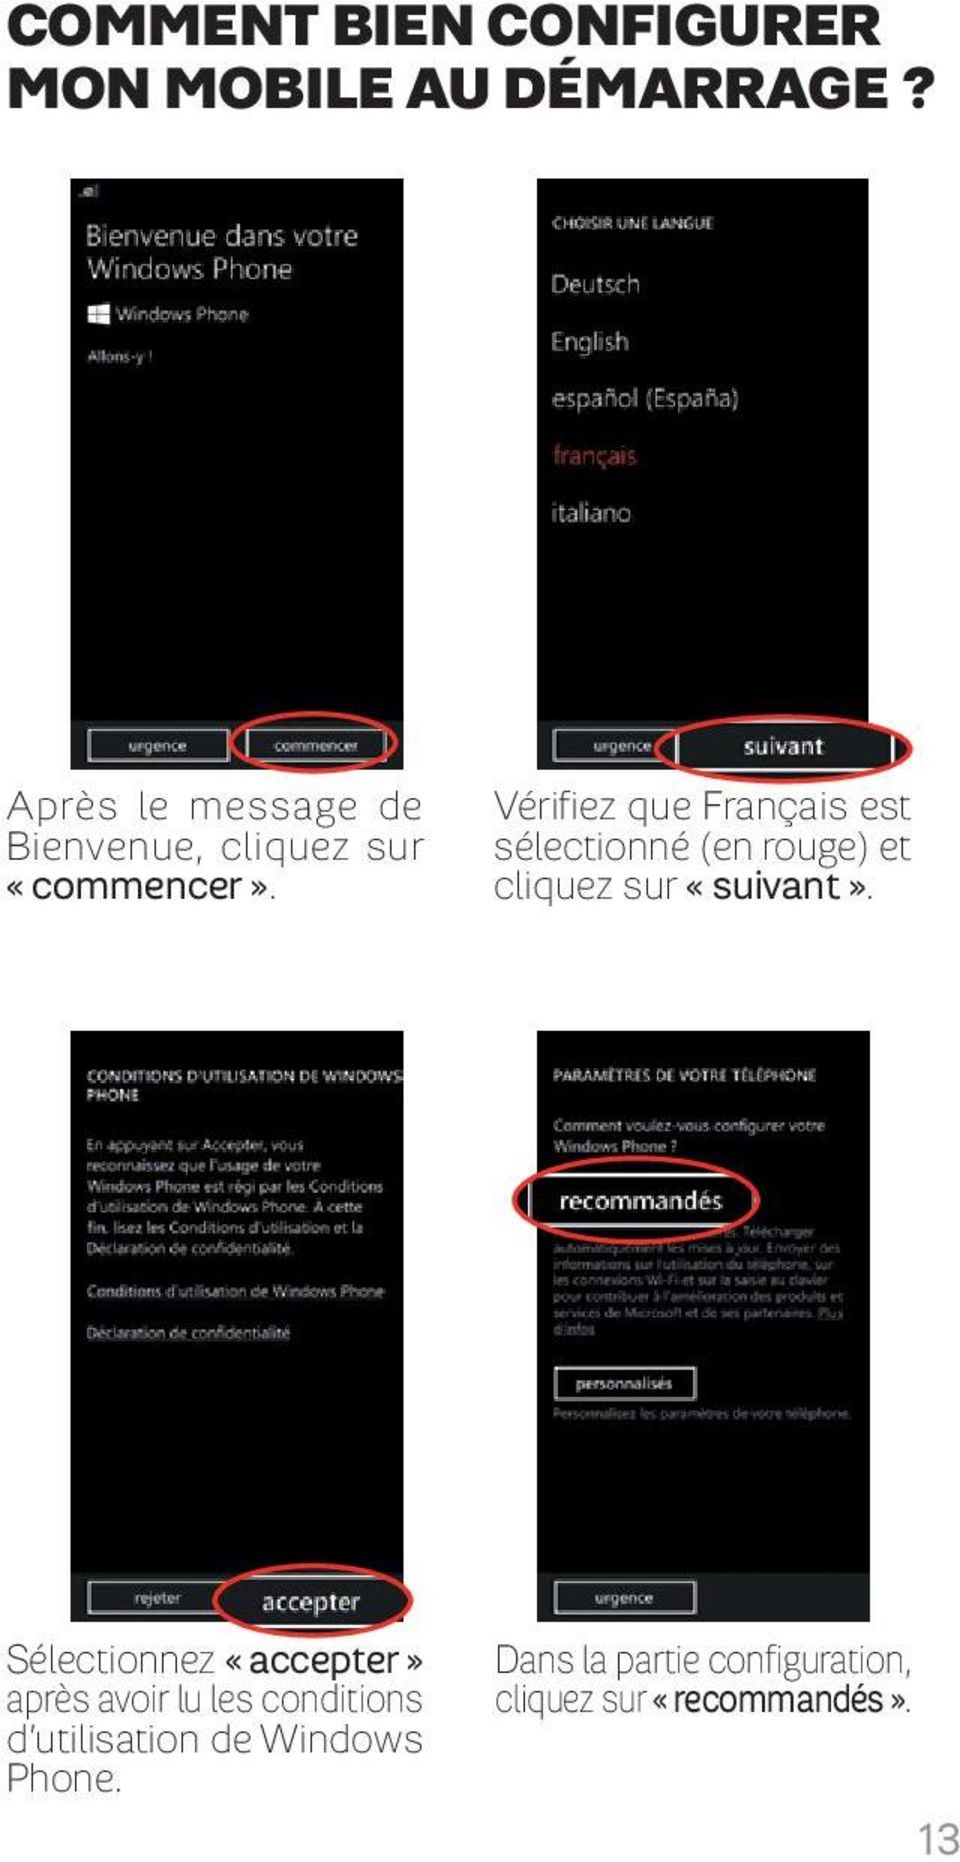 Vérifiez que Français est sélectionné (en rouge) et cliquez sur «suivant».